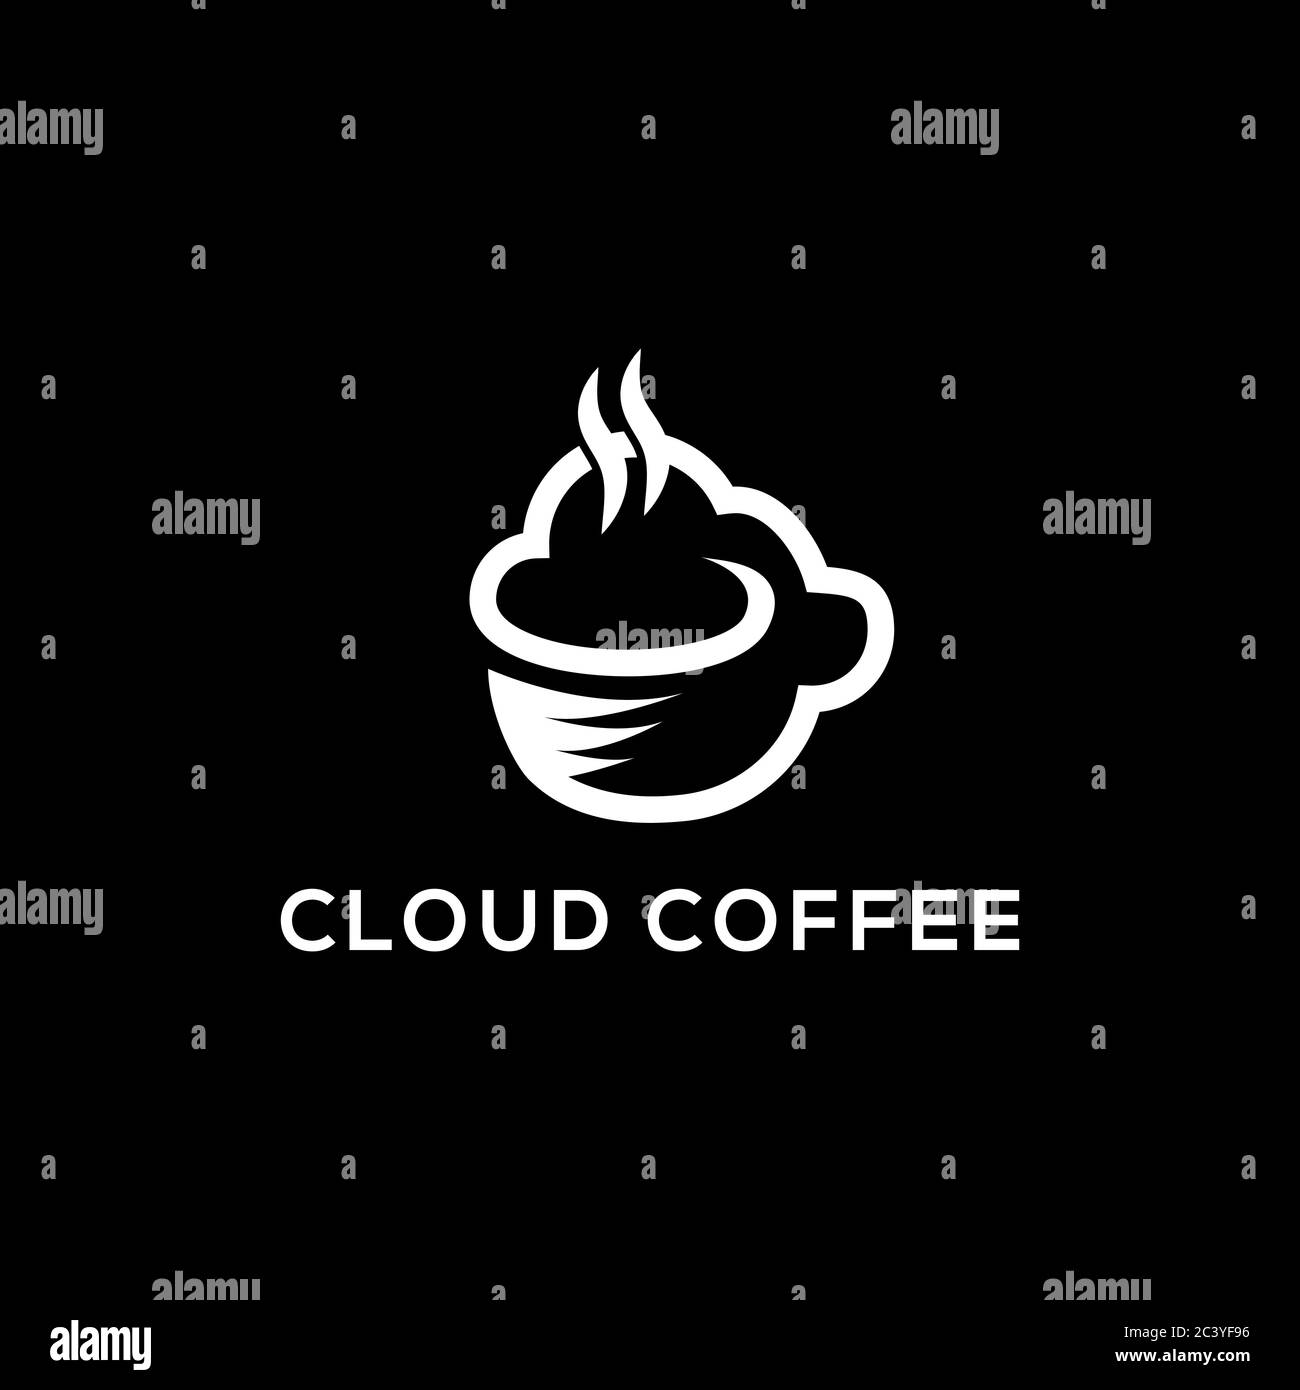 ispirazione creativa del logo del caffè cloud, linea d'arte pulita e intelligente, ideale per l'immagine dei marchi del logo aziendale e finanziario Illustrazione Vettoriale